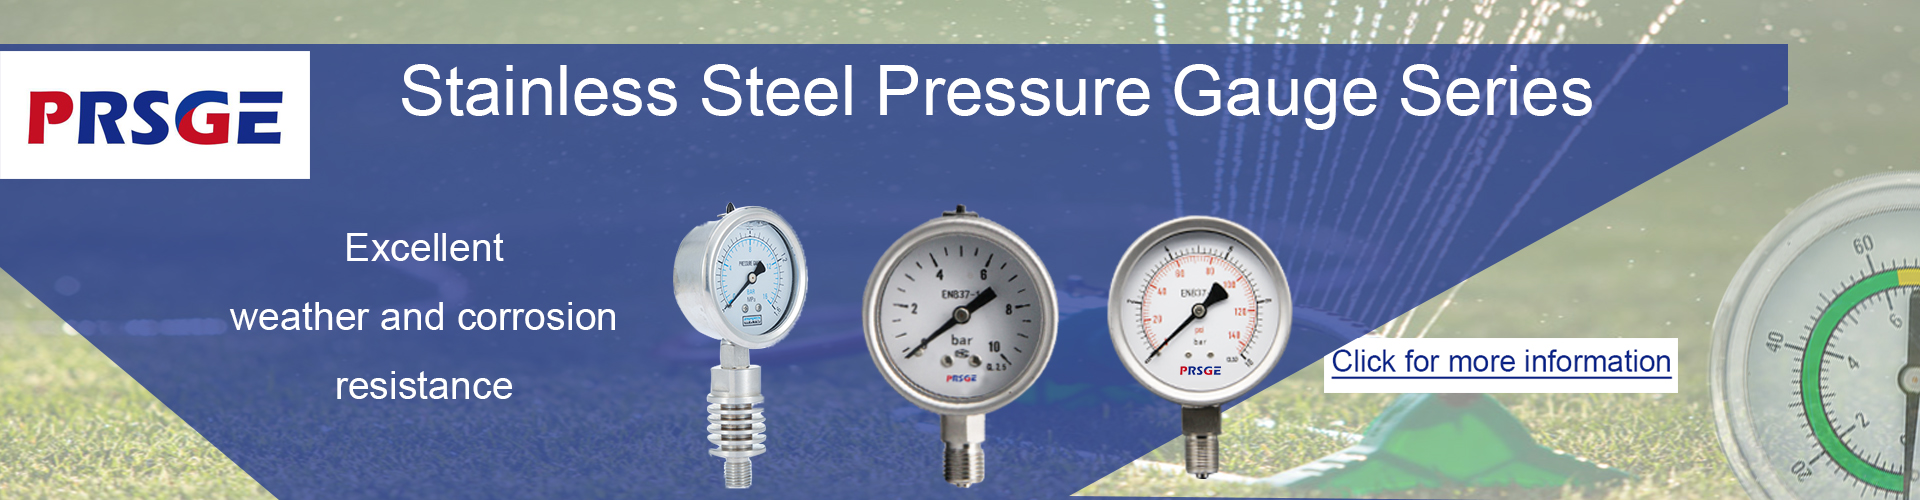 Stainless steel pressure gauge